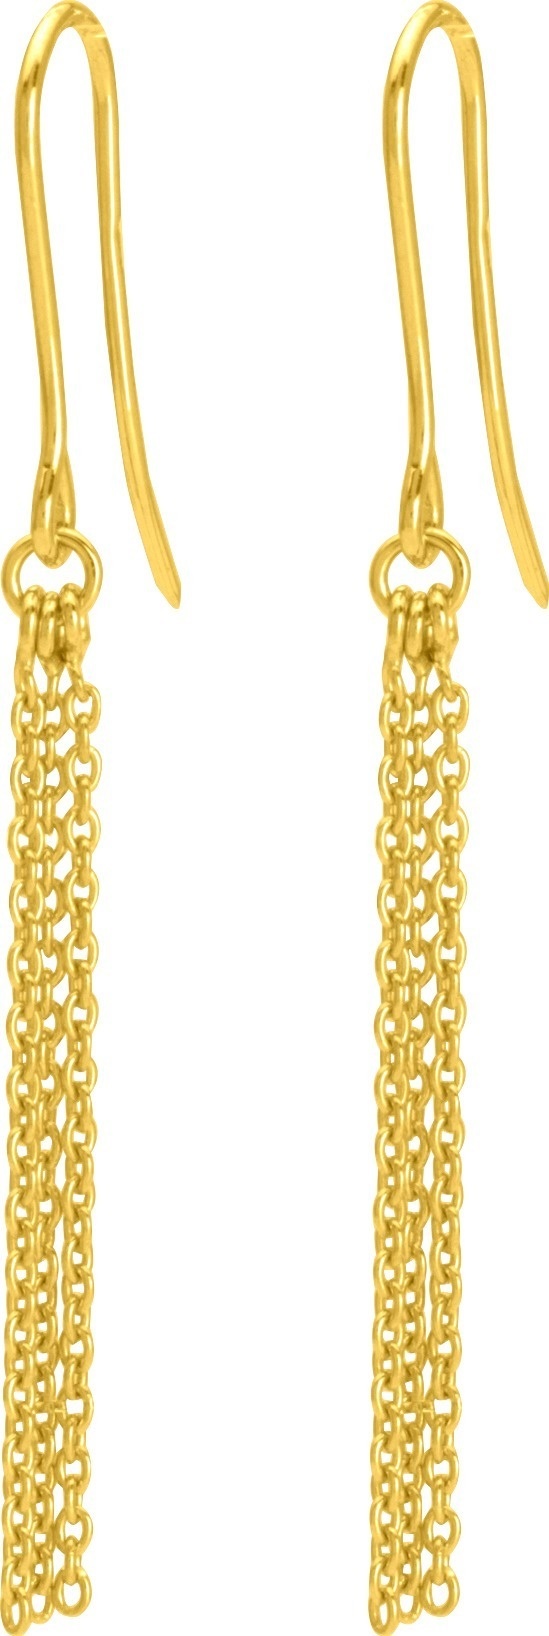 Boucle d'oreilles pendante or jaune - Boucles Oreilles or 18K - Bijouterie Horlogerie Lechine - Voir en grand